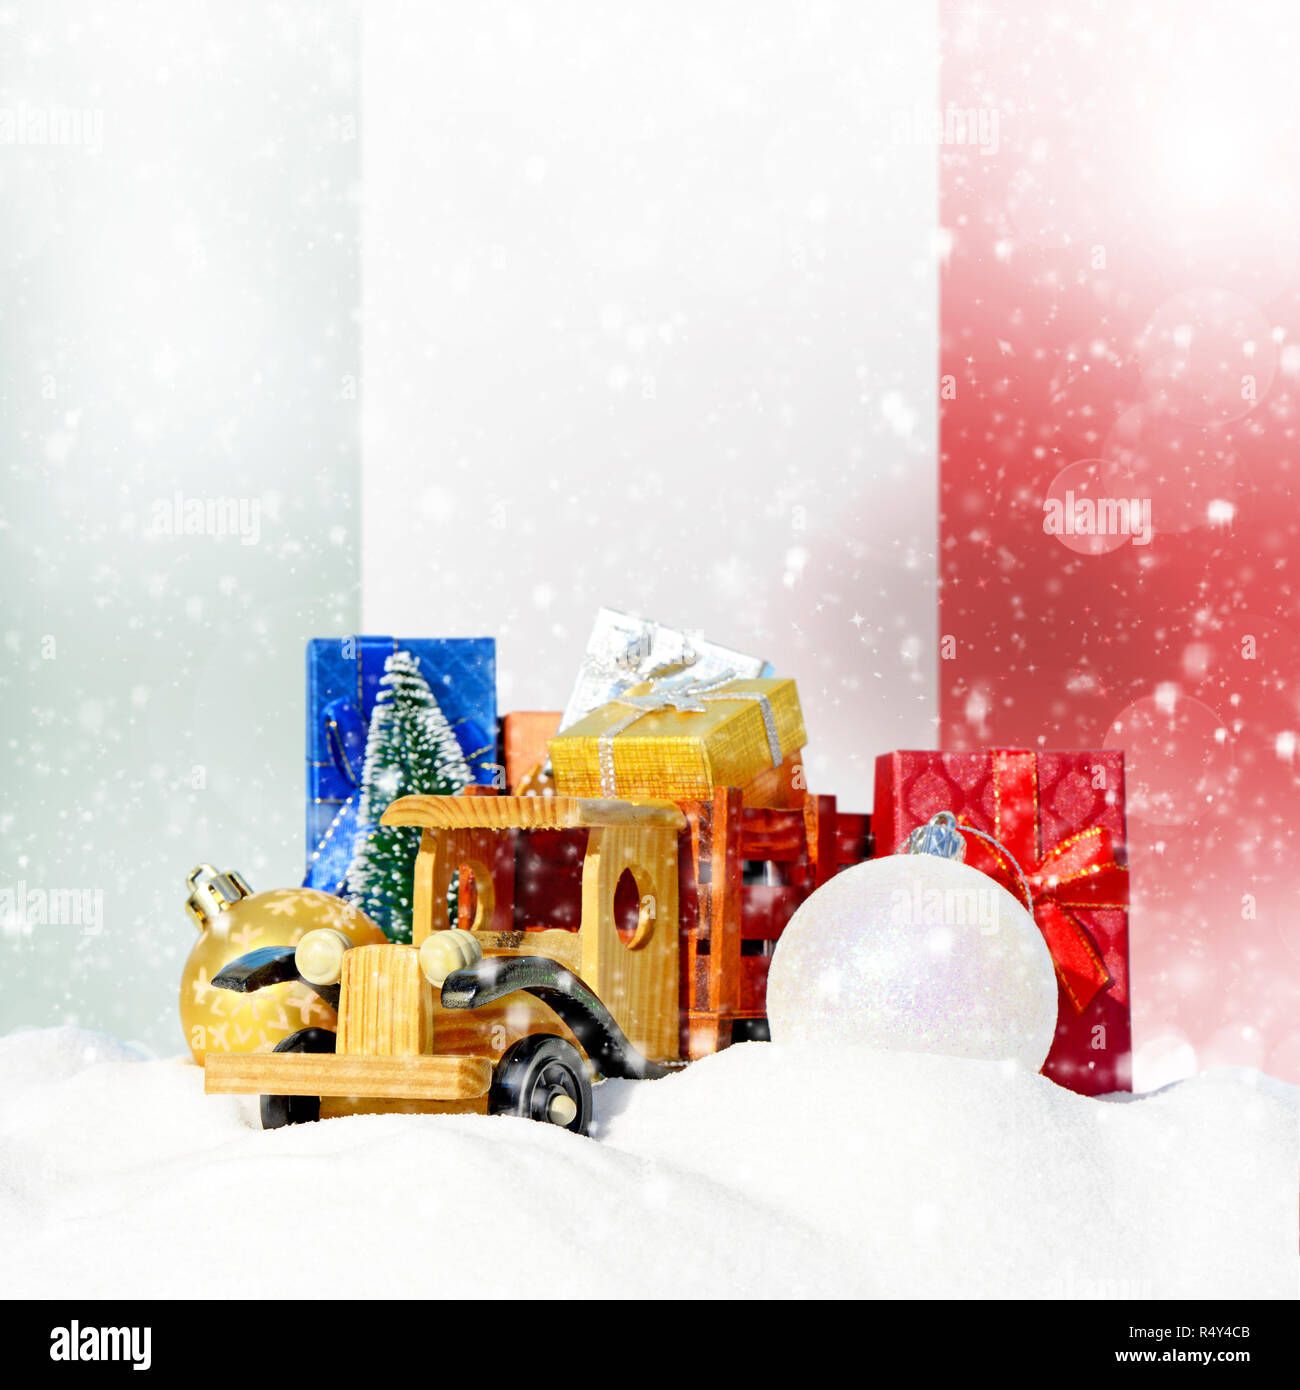 Weihnachten Hintergrund. Spielzeug-LKW mit Geschenken, Neues Jahr Tanne, Kugeln im Schneetreiben und italienische Flagge Stockfoto